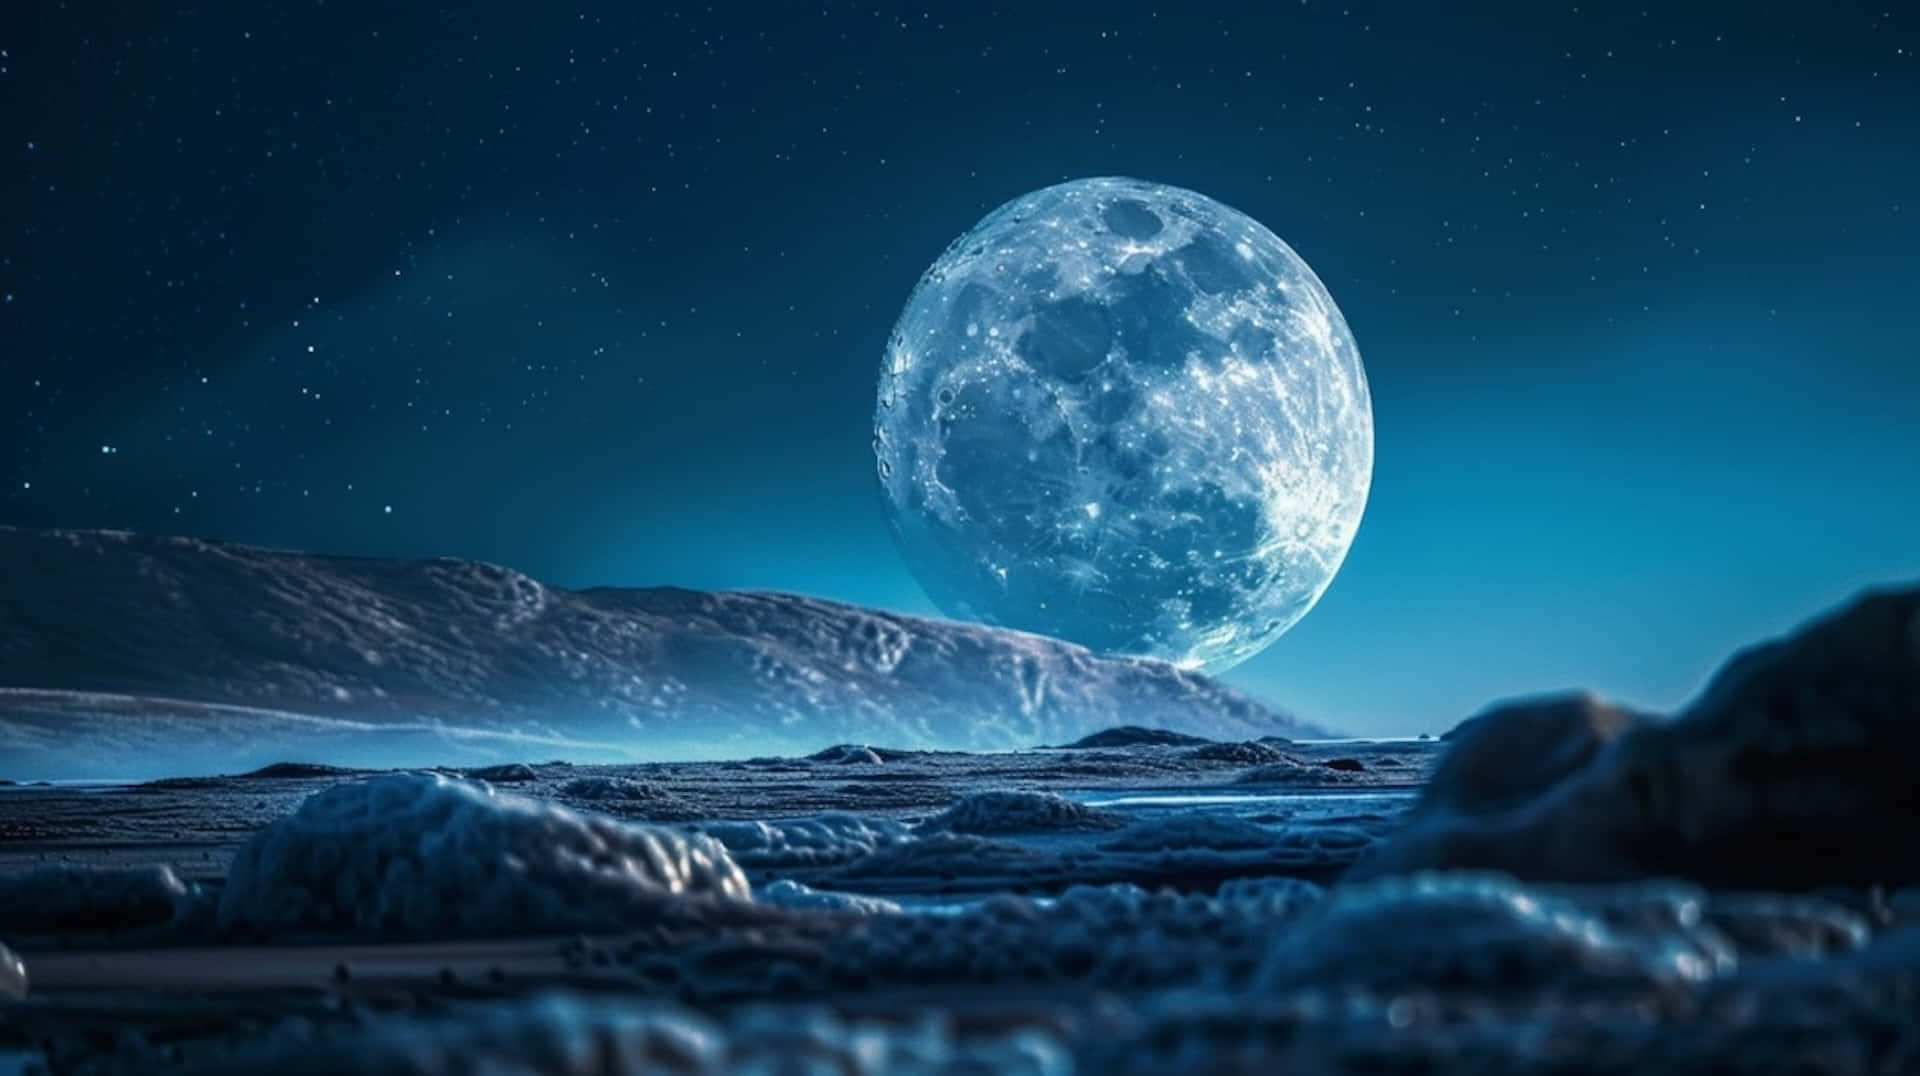 Majestic Moonrise Over Lunar Landscape.jpg Wallpaper